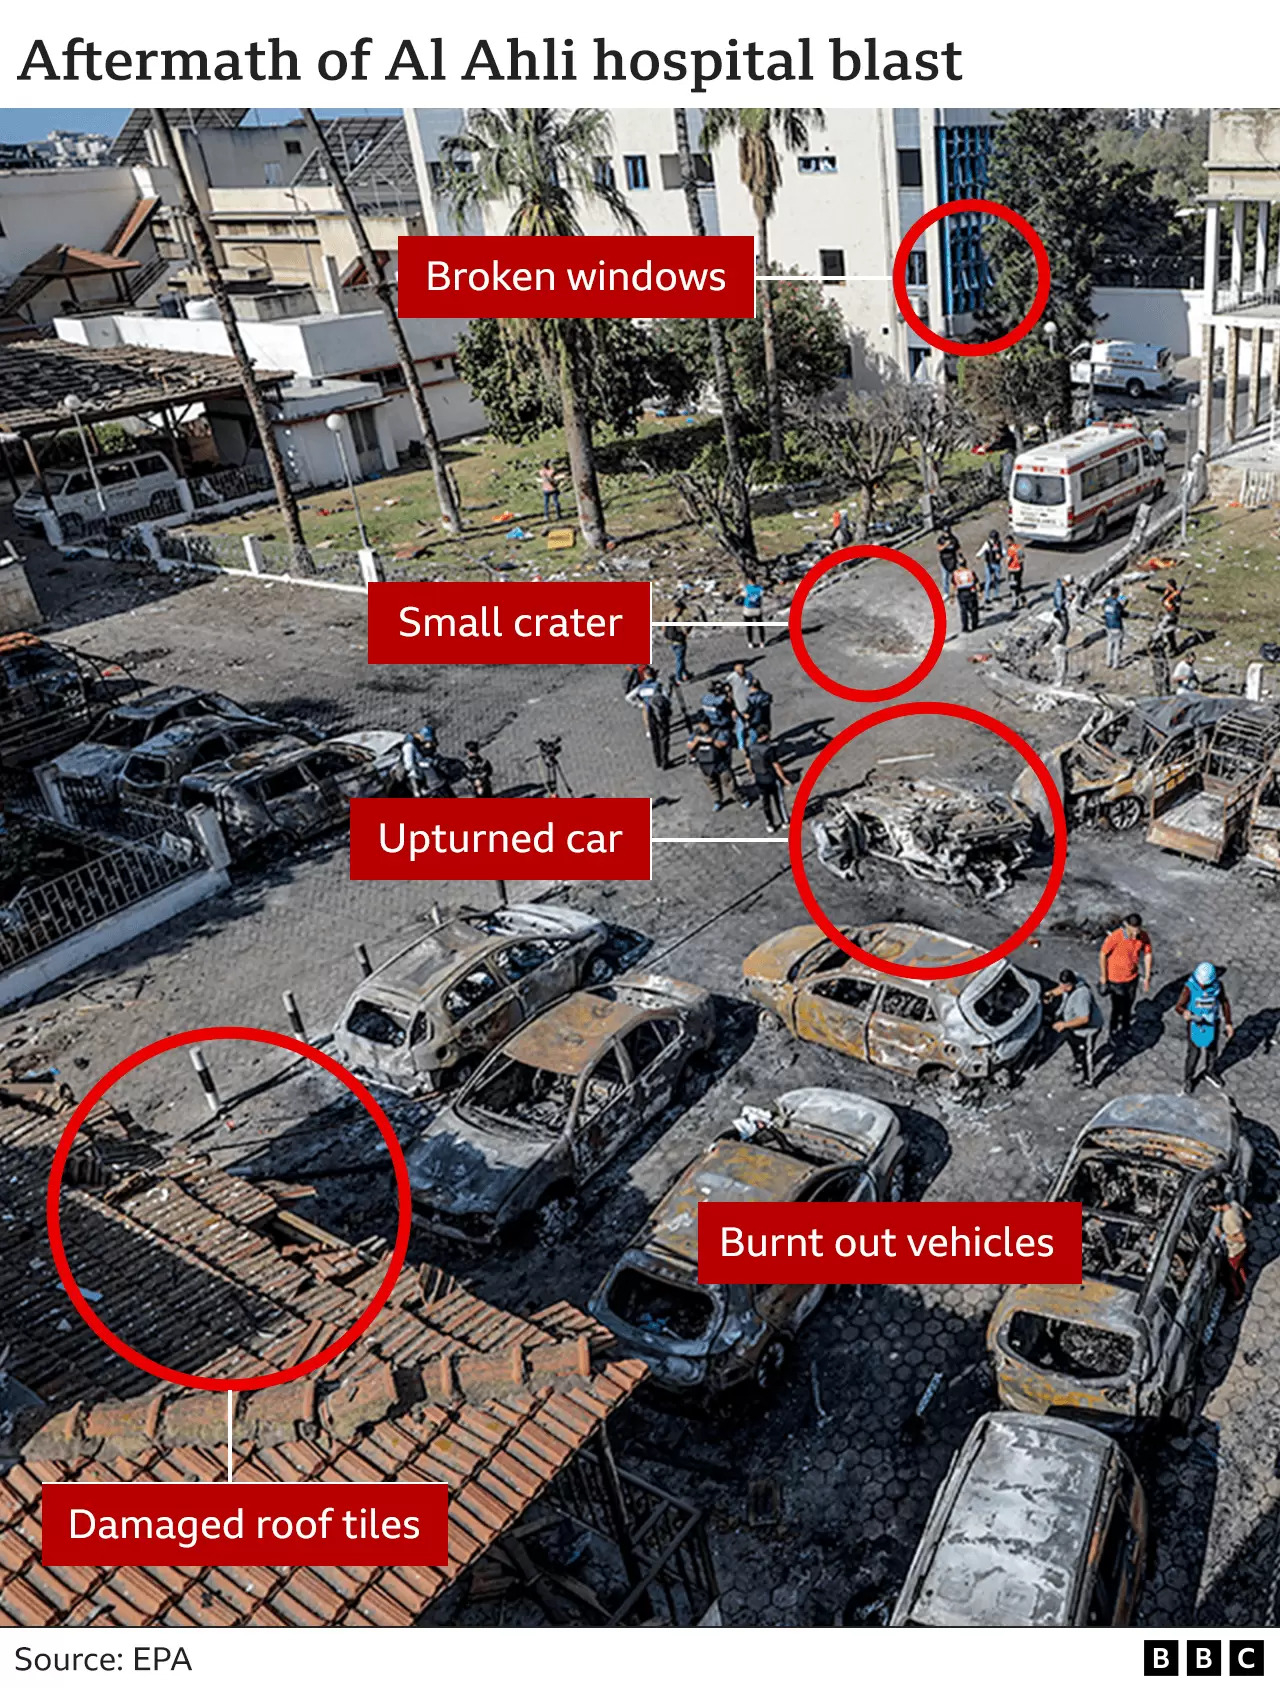 영국 BBC 그래픽. 이스라엘군의 공습이 폭발 참사 원인이라면 이렇게 건물이 멀쩡할 리가 없고 앝은 구덩이만 파였을 리 없다는 것이다.